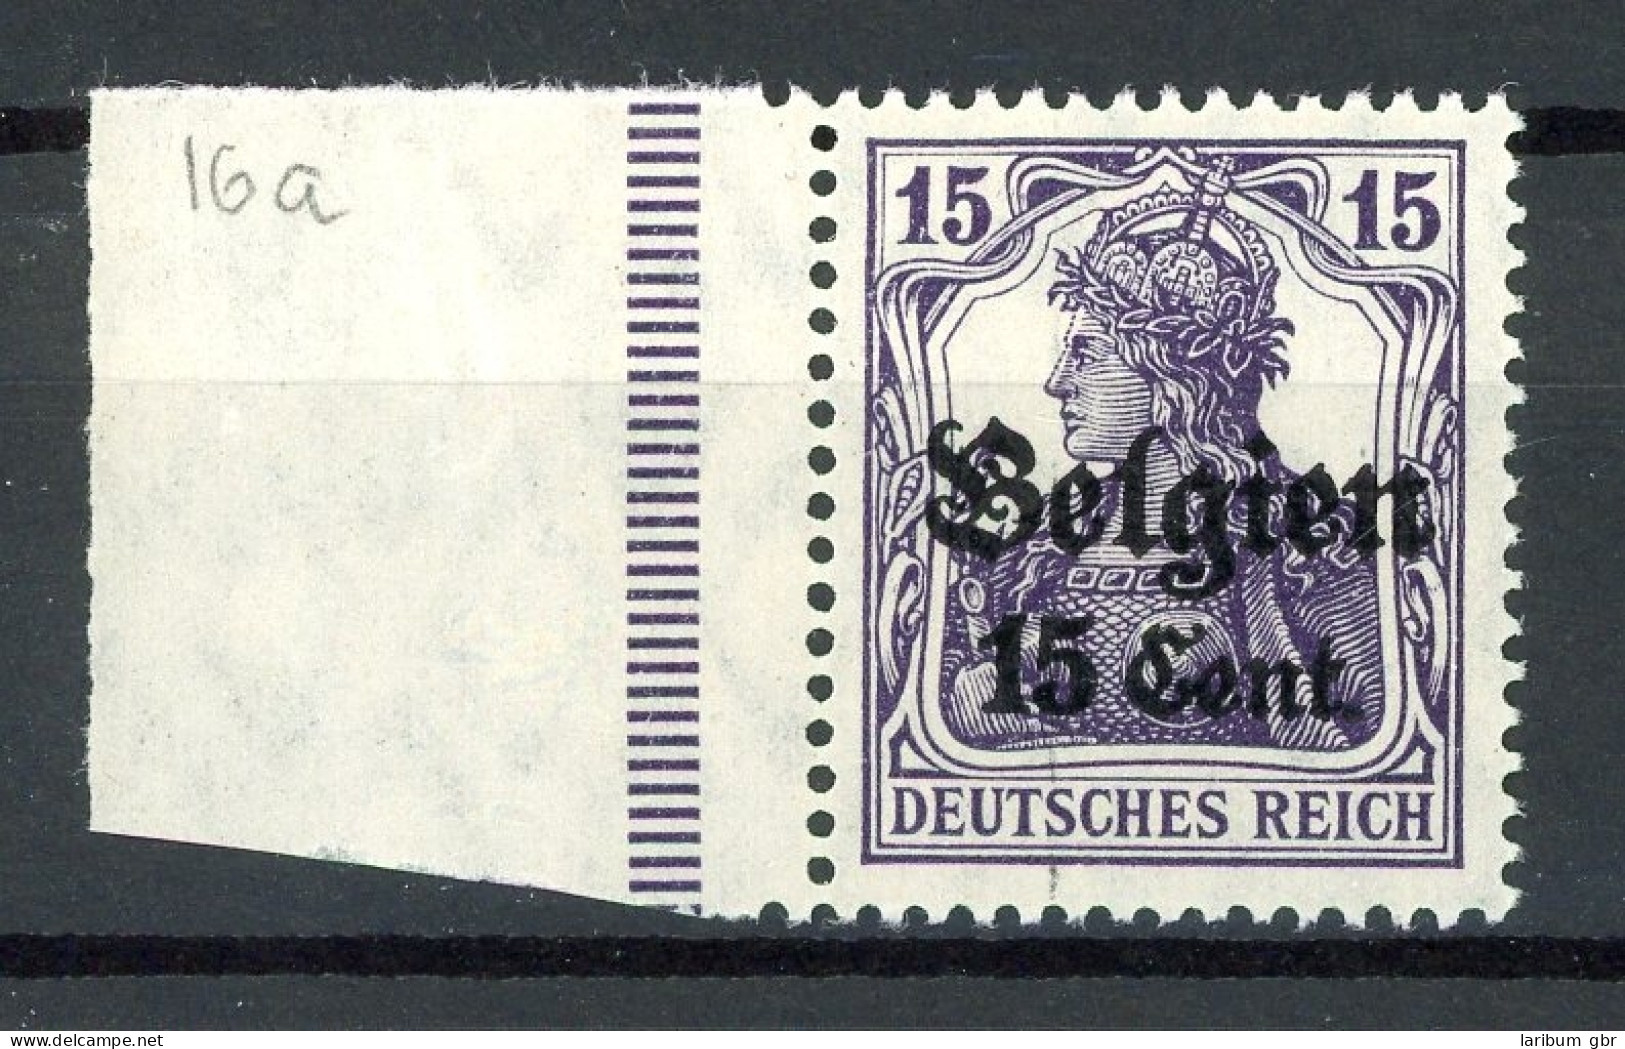 Deutsche Besetzung LP Belgien 16 A Postfrisch Farbgeprüft #HU602 - Besetzungen 1914-18